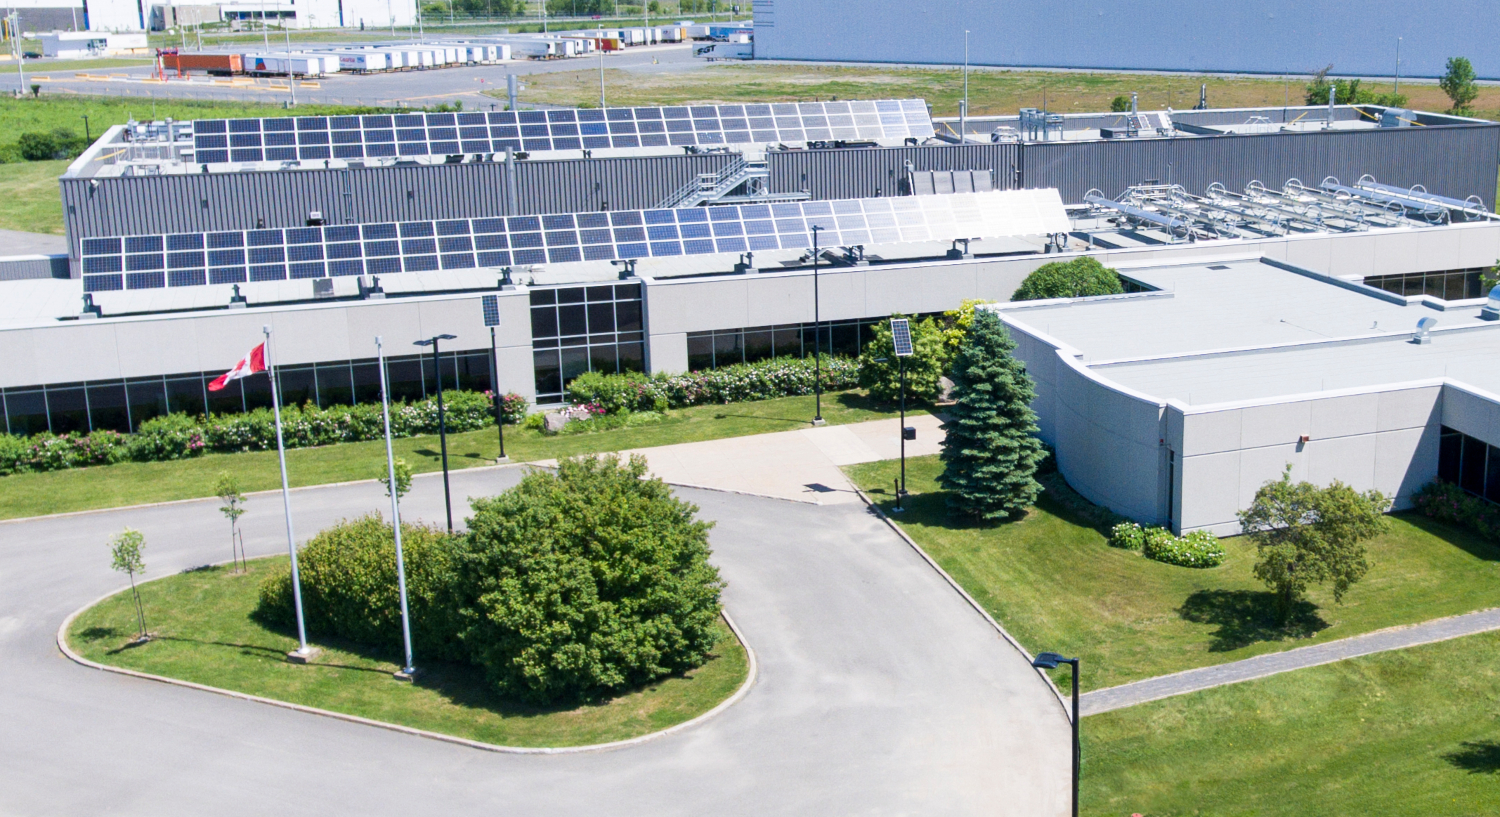 Vue aérienne du bâtiment du centre de recherche CanmetÉNERGIE, situé à Varennes, avec ses nombreux panneaux solaires sur le toit.